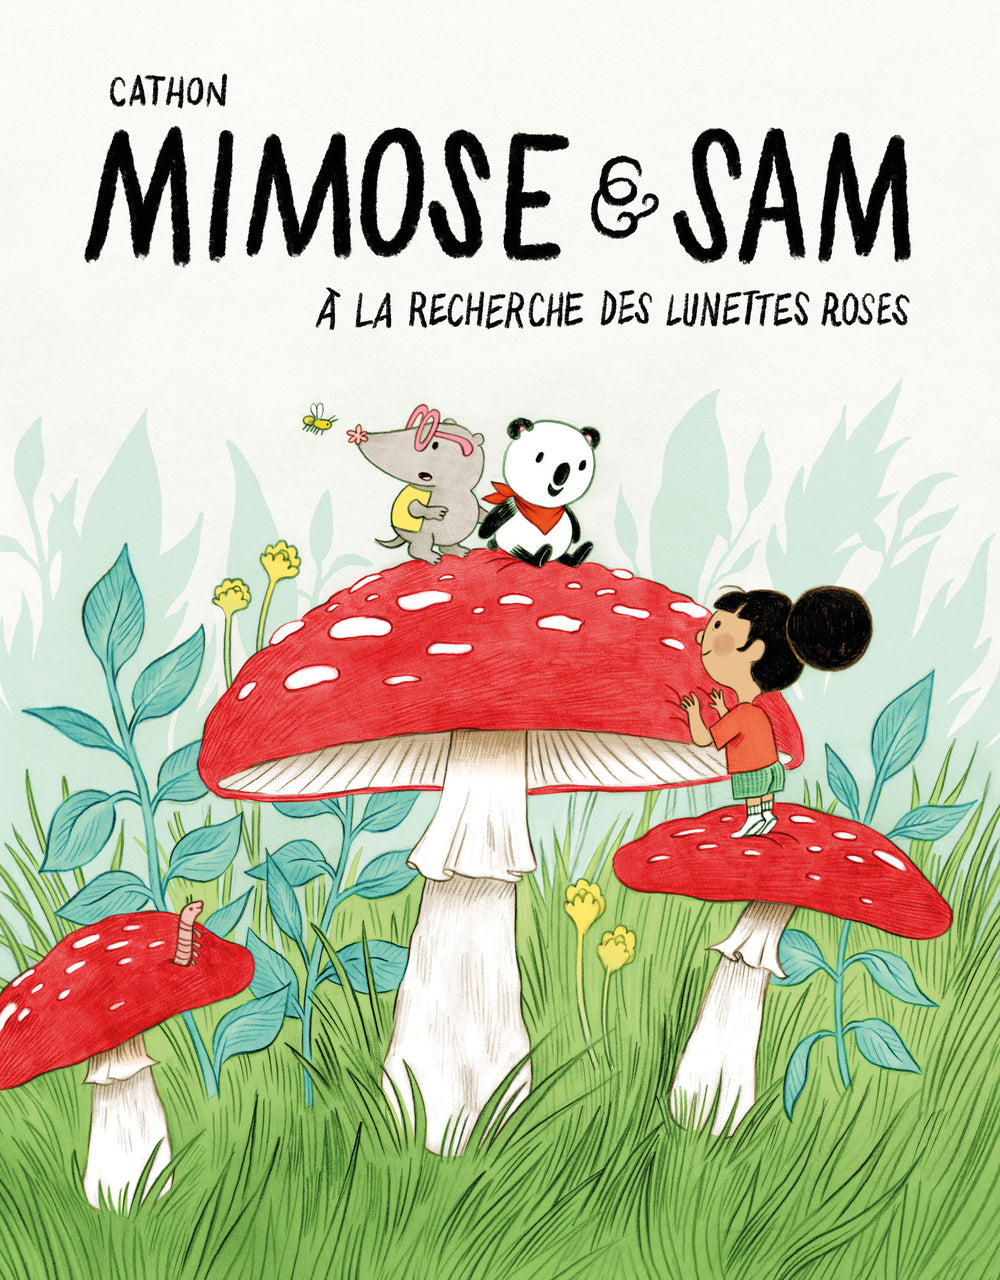 Mimose et Sam vol. 2 - À la recherche des lunettes roses